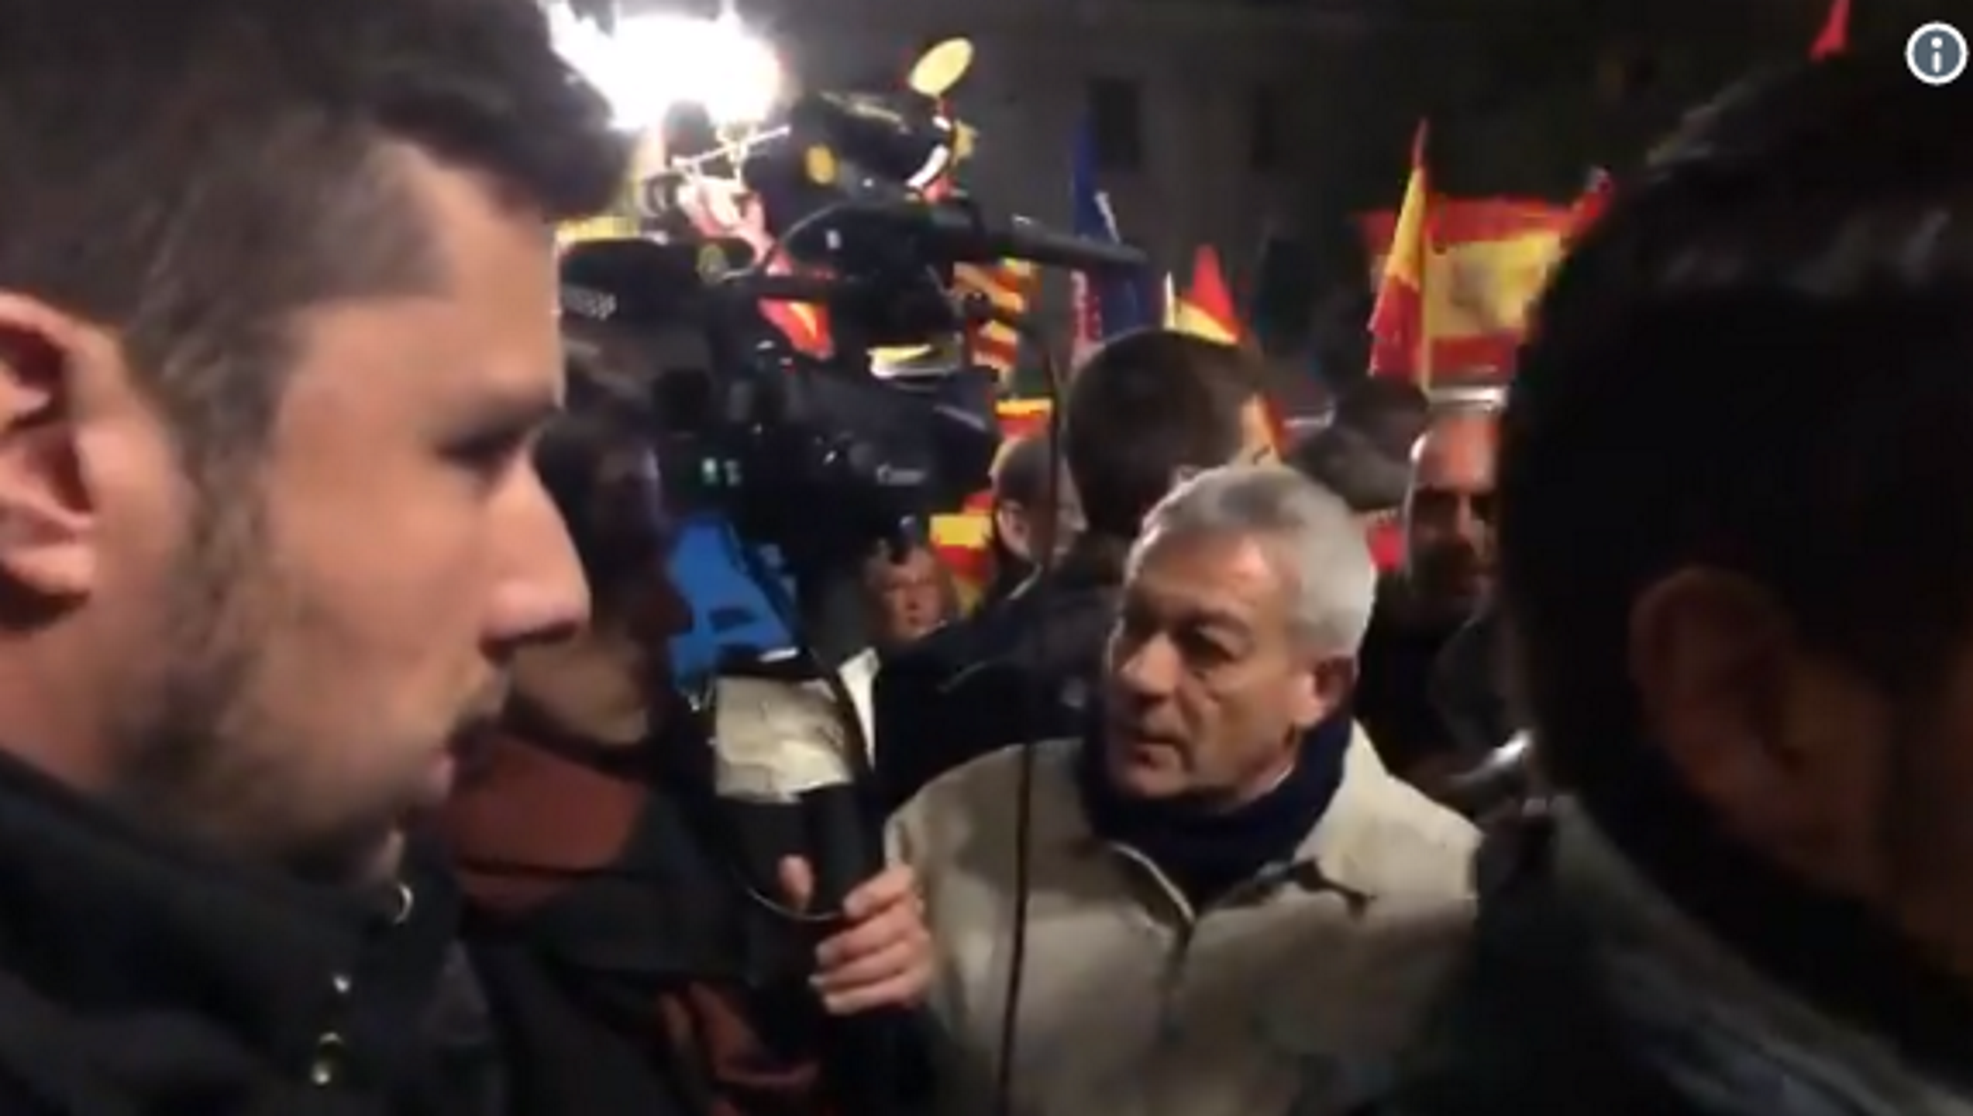 Incident contra la premsa a la manifestació espanyolista de Sabadell